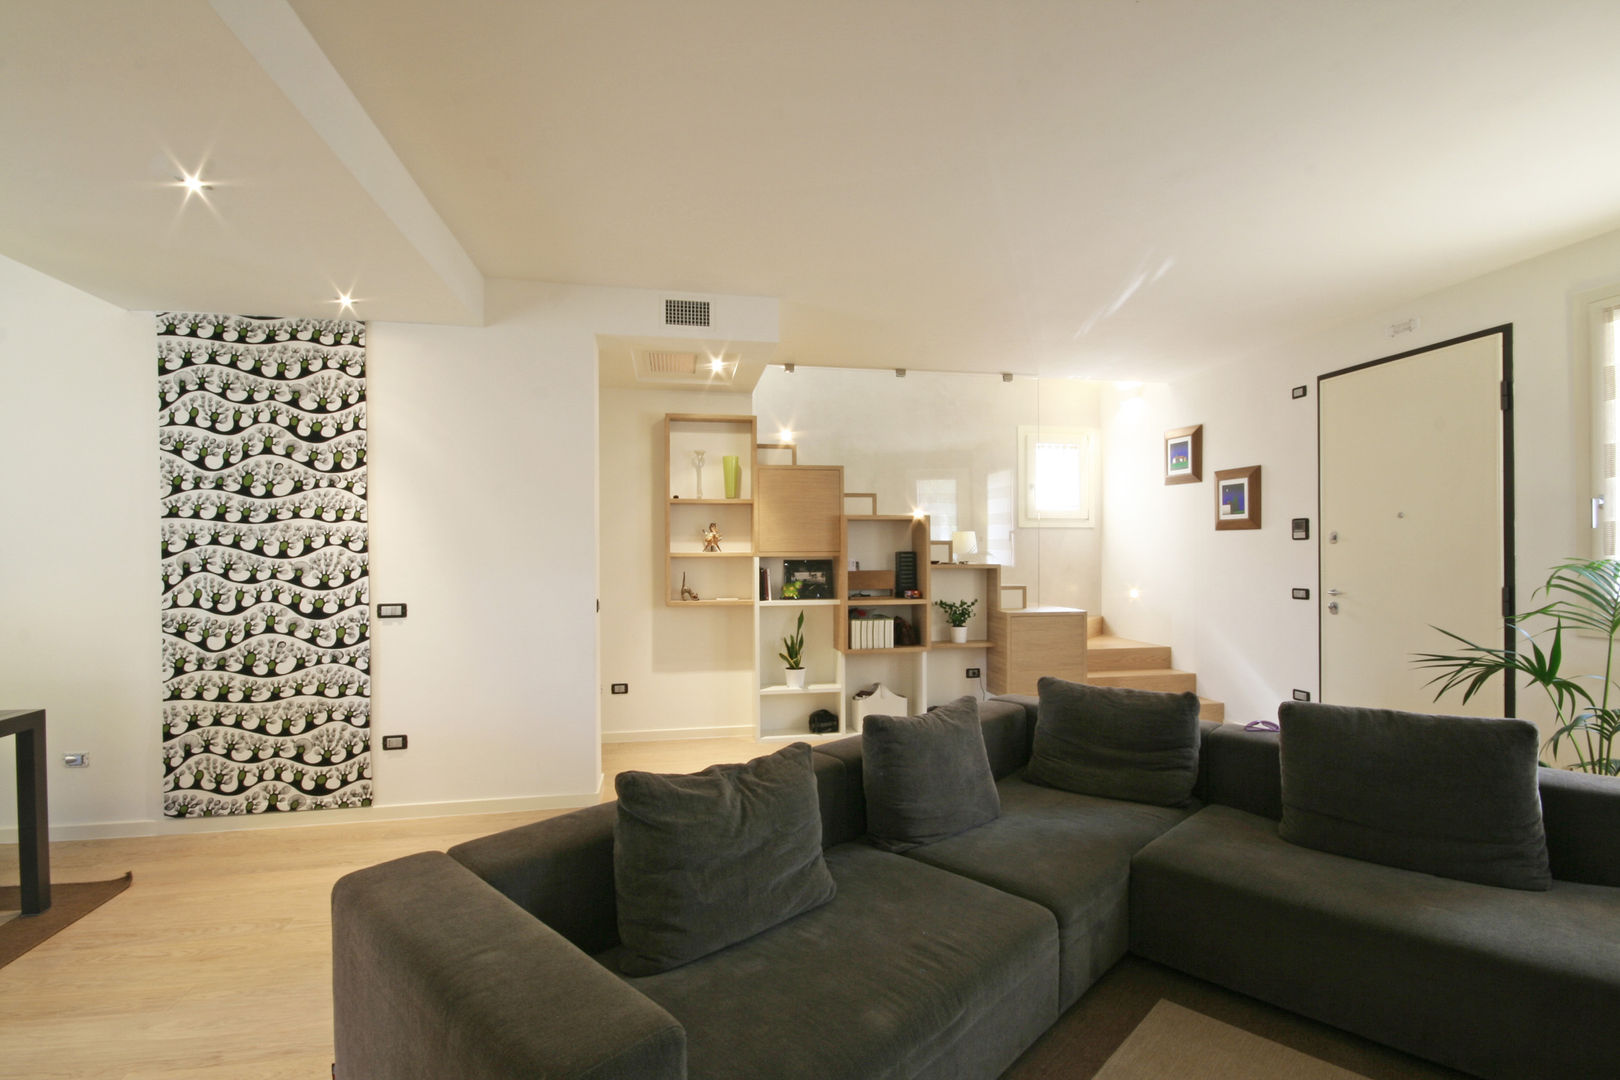 House in Marostica, Diego Gnoato Architect Diego Gnoato Architect Salas de estar modernas TV e mobiliário